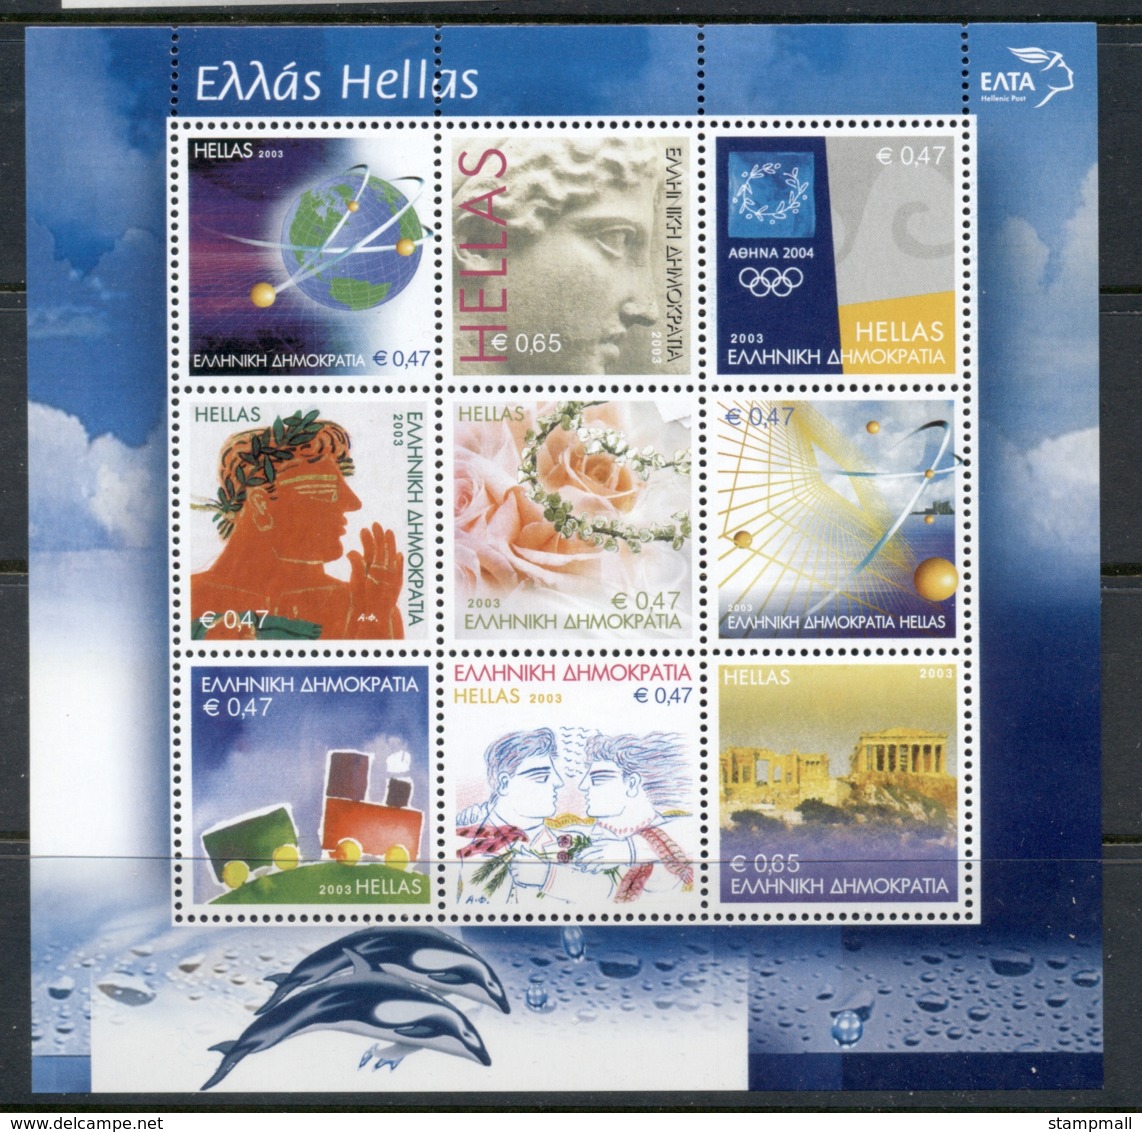 Greece 2003 Greetings MS MUH - Unused Stamps